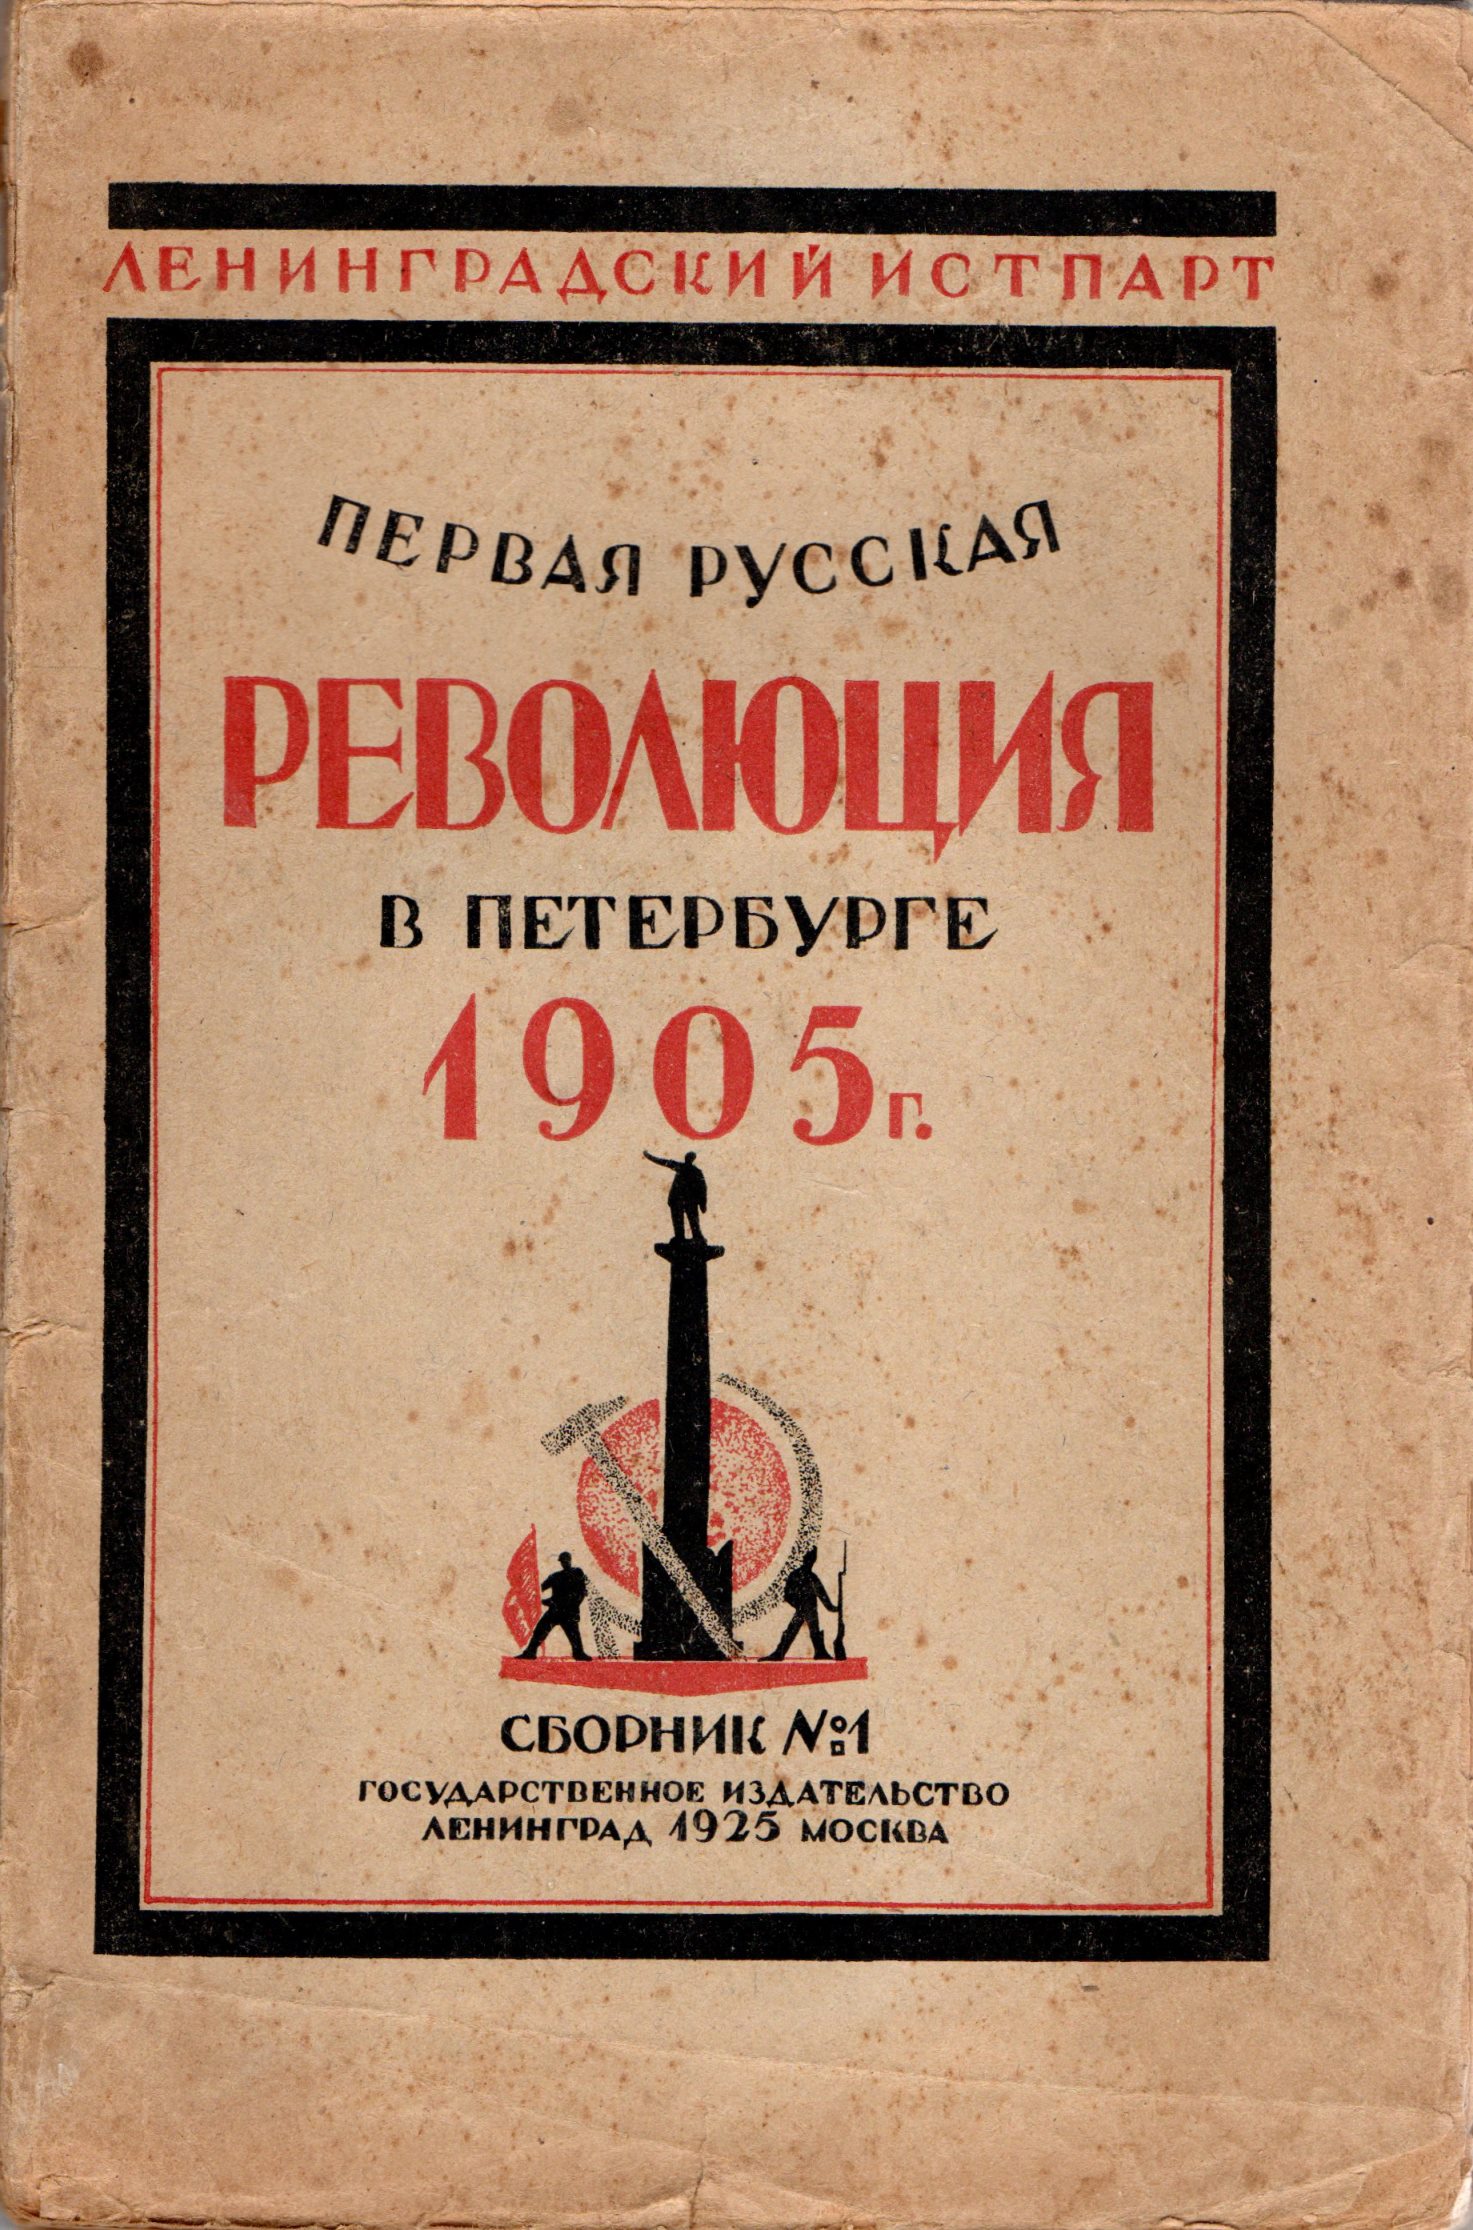 Книга "Первая русская революция в Петербурге. 1905 г. Сб. І."